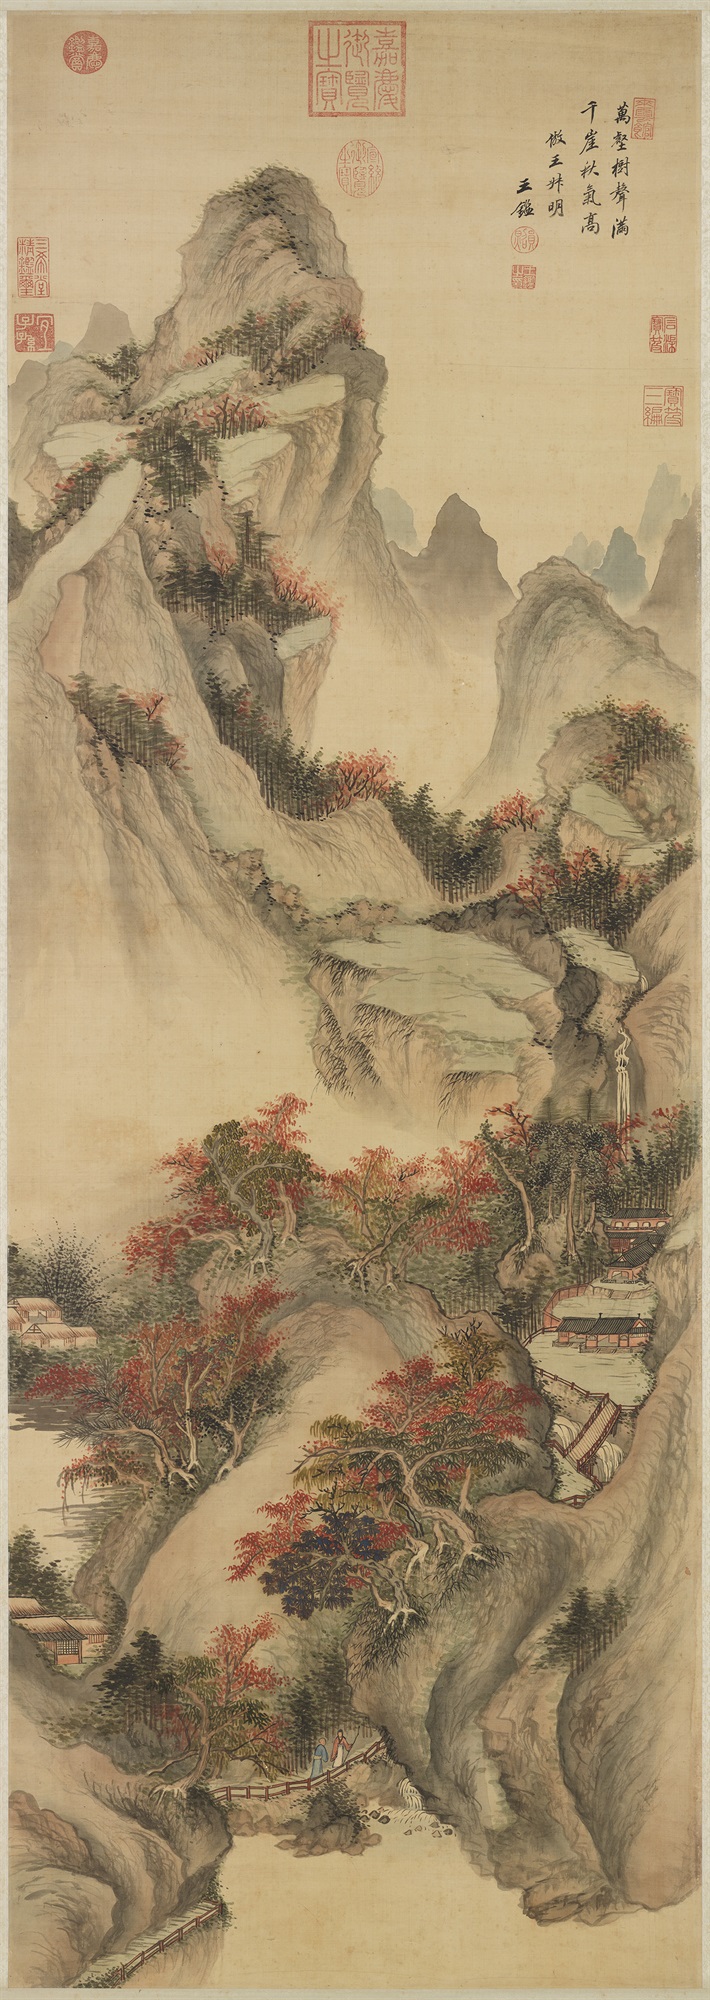 Imitating Wang Meng’s “Autumn Mountains”, Wang Jian (1598-1677), Qing dynastypreview